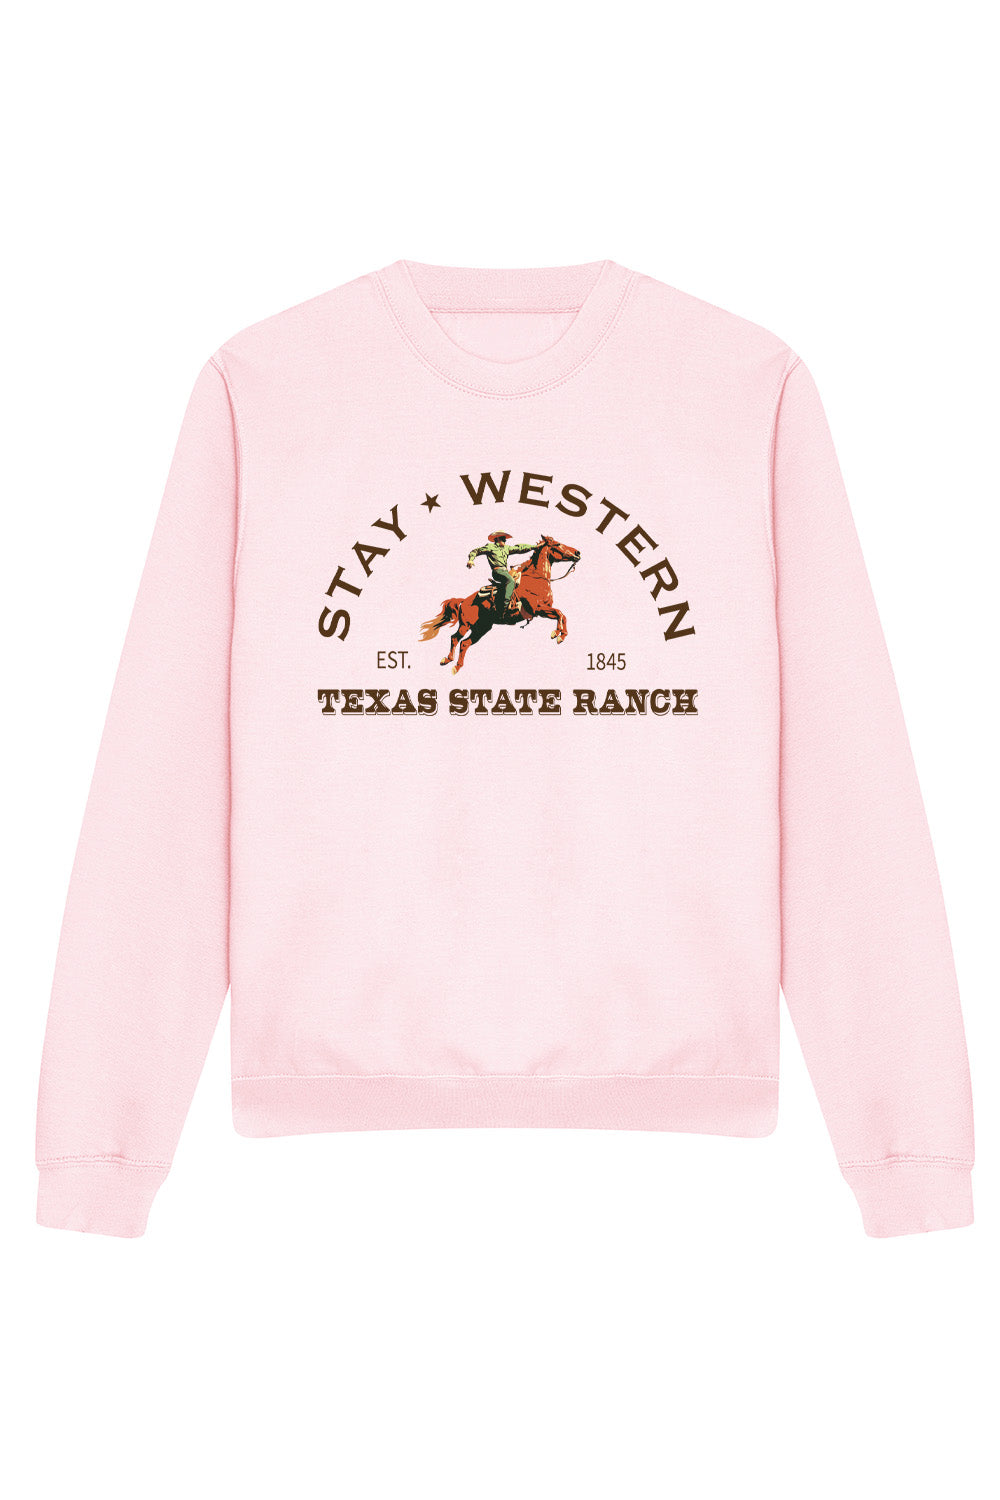 Stay Western Sweatshirt In Baby Pink (Custom Pack)